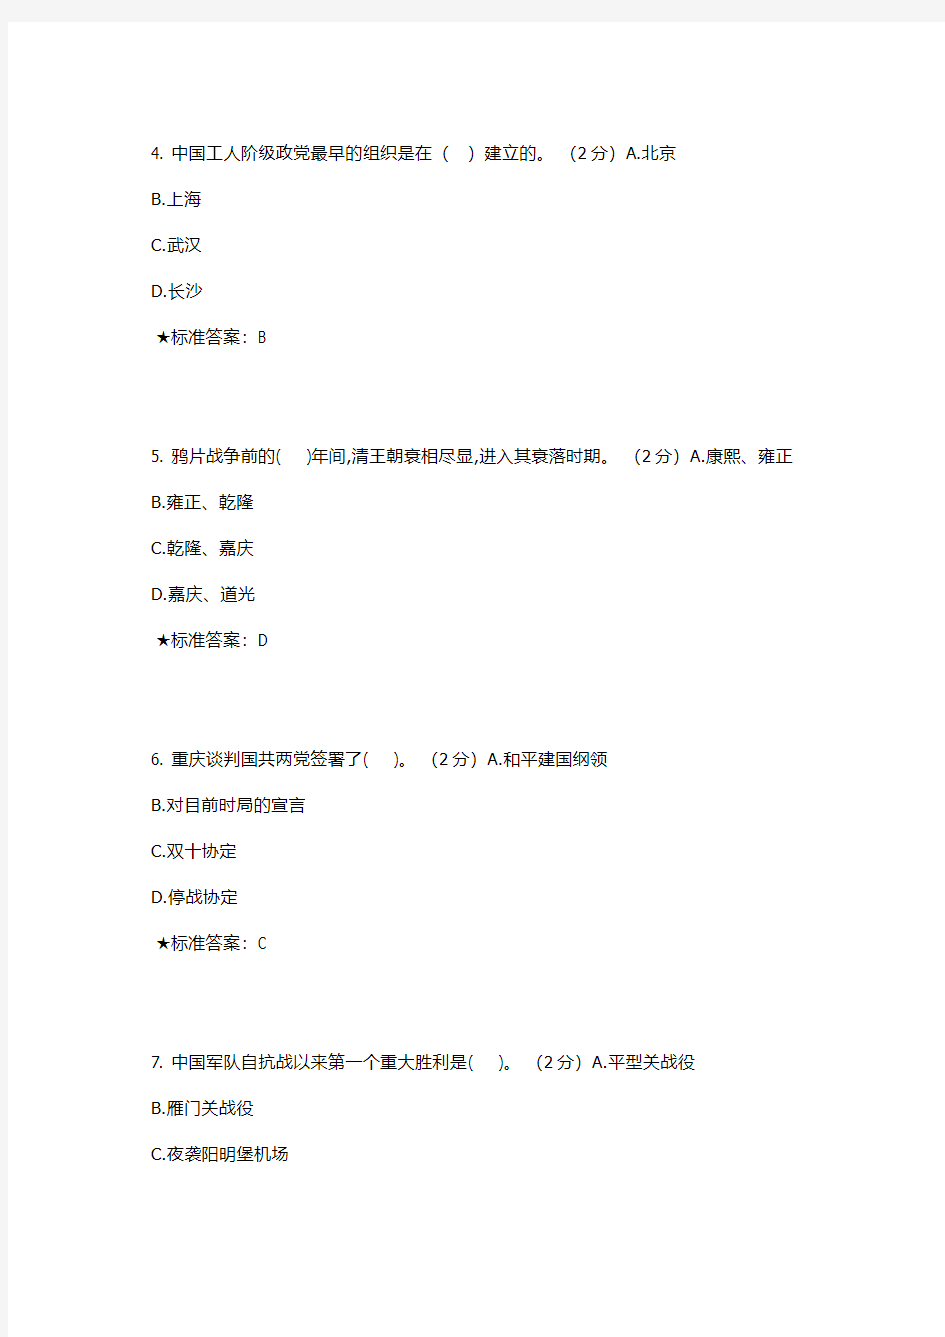 【2014秋季版】中南大学《中国近现代史纲要 》课程在线考试题库及参考答案